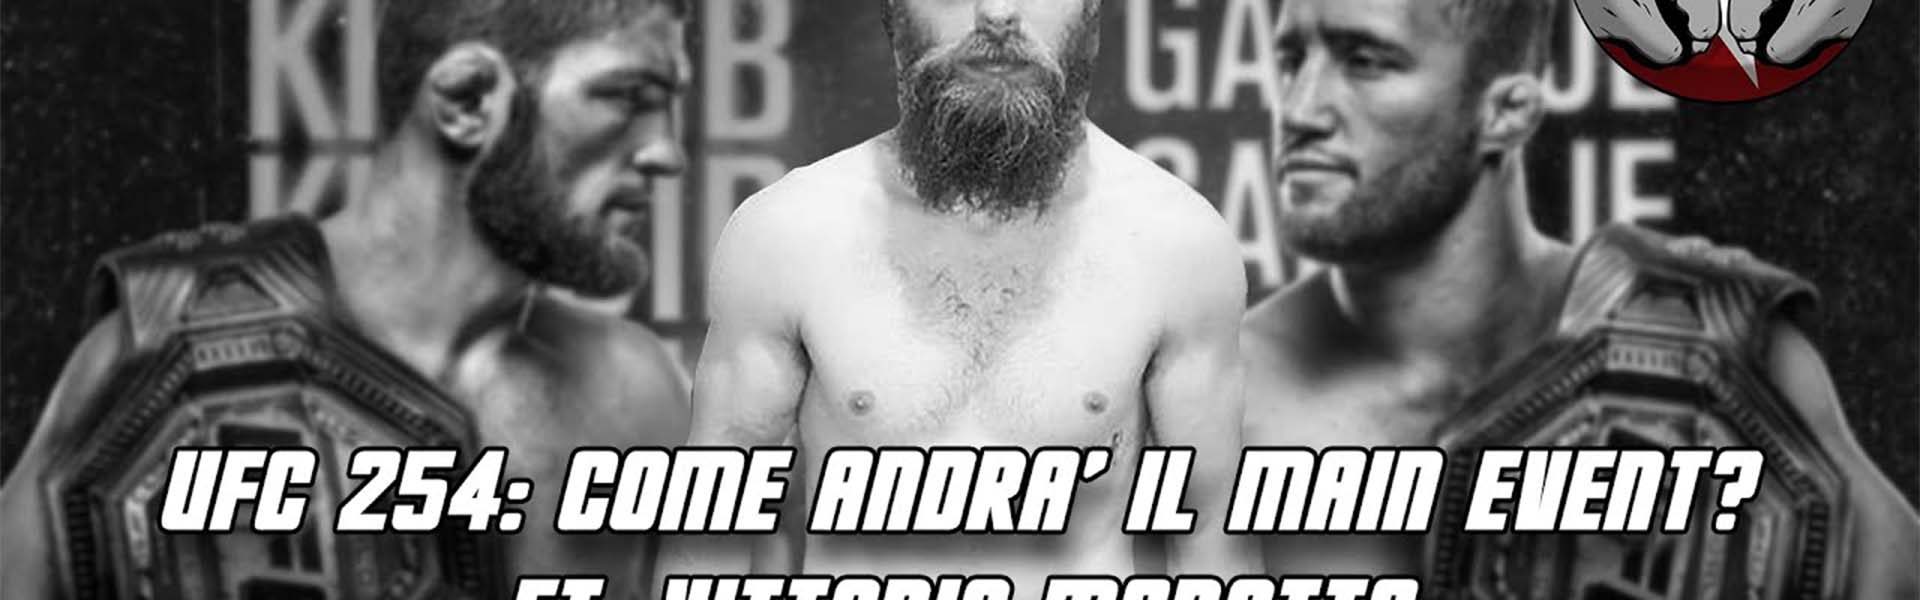 The Real FIGHT Talk Show Ep. 19: UFC 254: COME ANDRÀ IL MAIN EVENT? ft. Vittorio Marotta